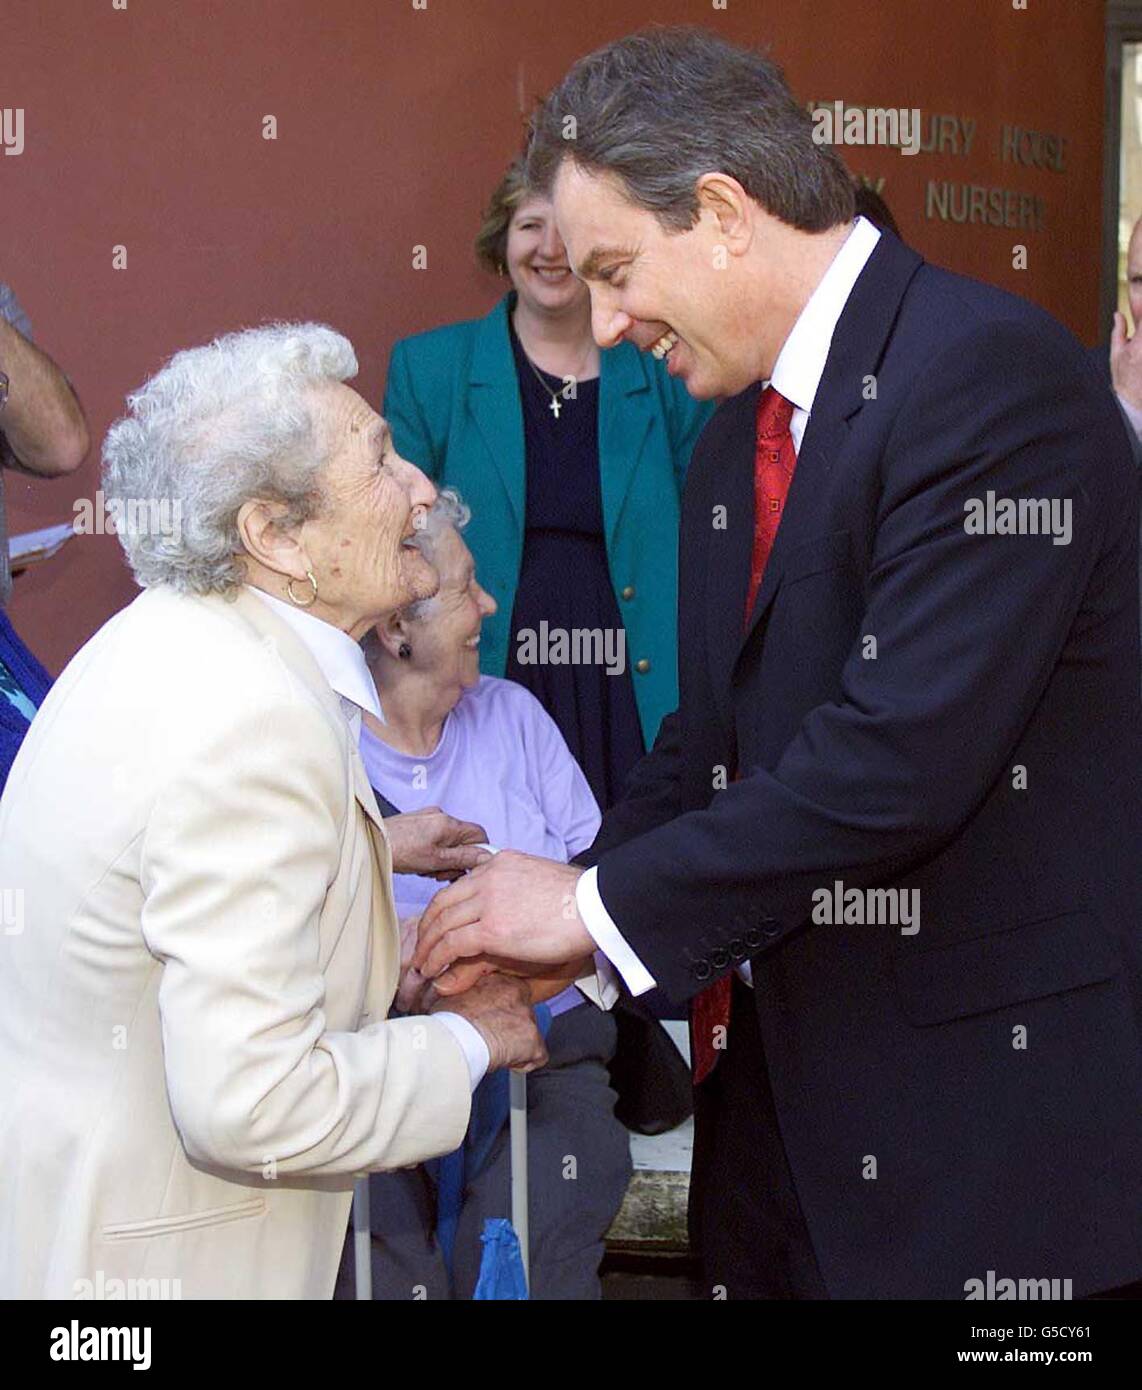 Il primo Ministro Tony Blair incontra una donna anziana, durante la sua visita al St Thomas's Hospital di Londra. Foto Stock